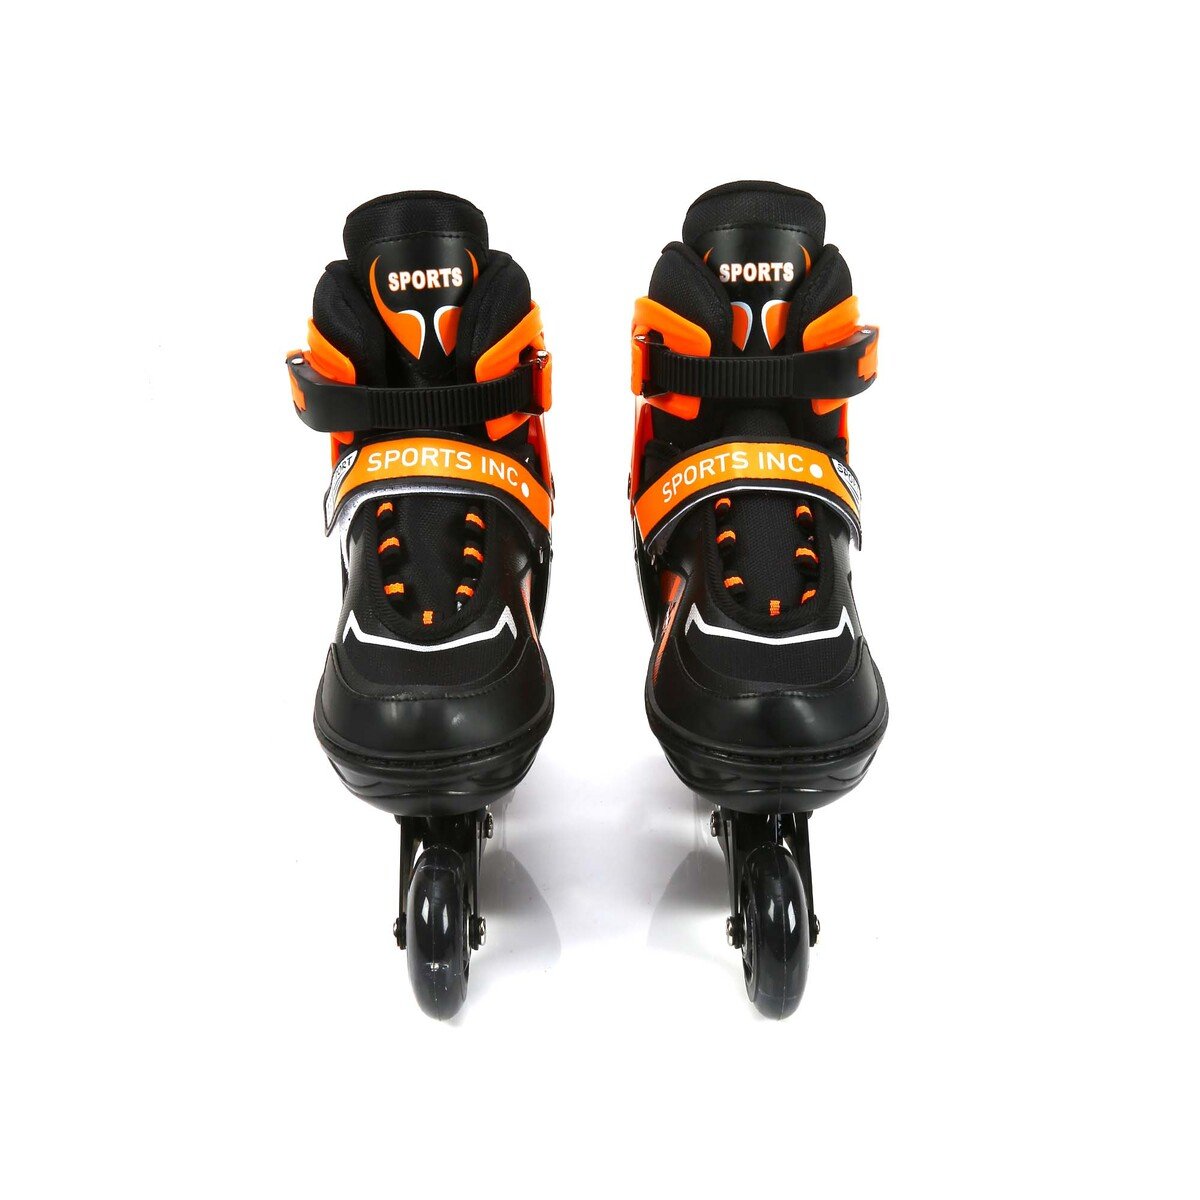 سبورتس إنك حذاء تزلج للأطفال بأربع عجلات مقاس 29-33 AB4-333 سمول ألوان متنوعة